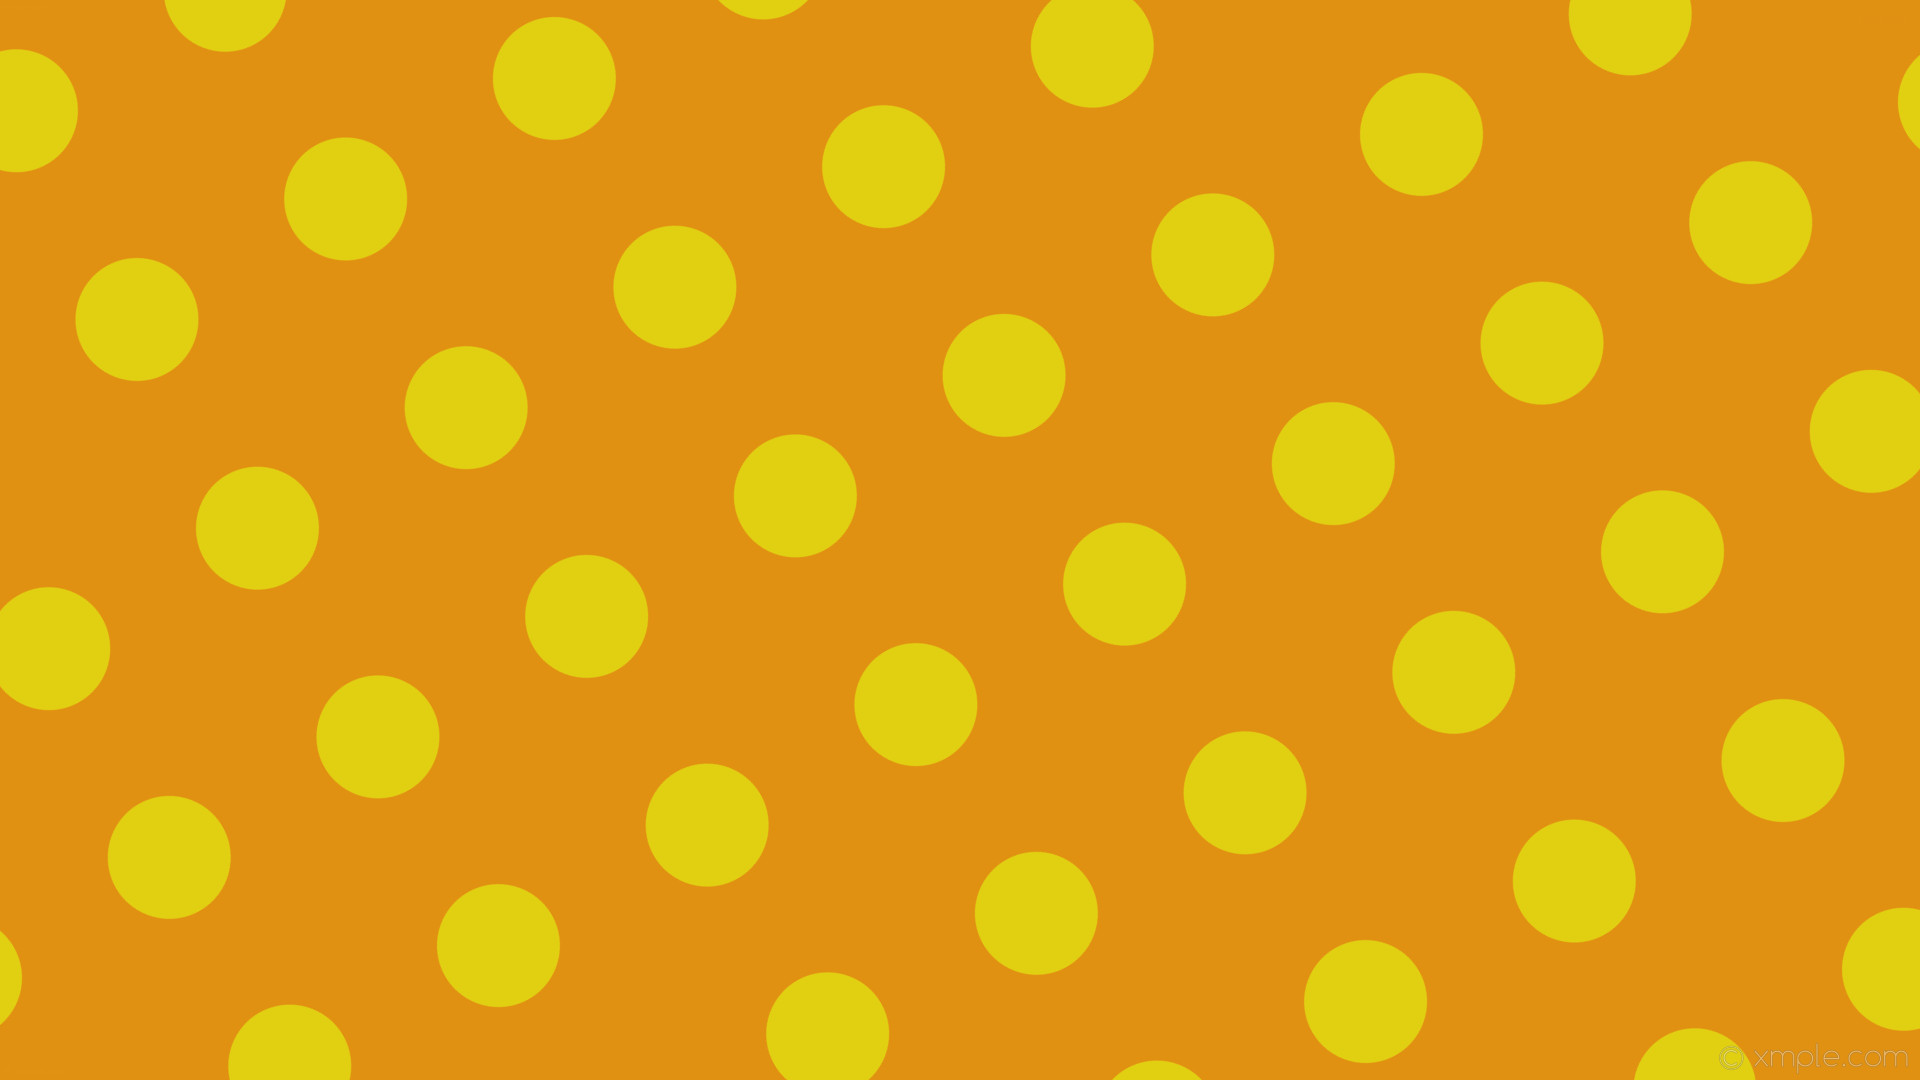 1920x1080 wallpaper yellow orange polka dots spots #e19112 #e1cf12 120Â° 123px 241px